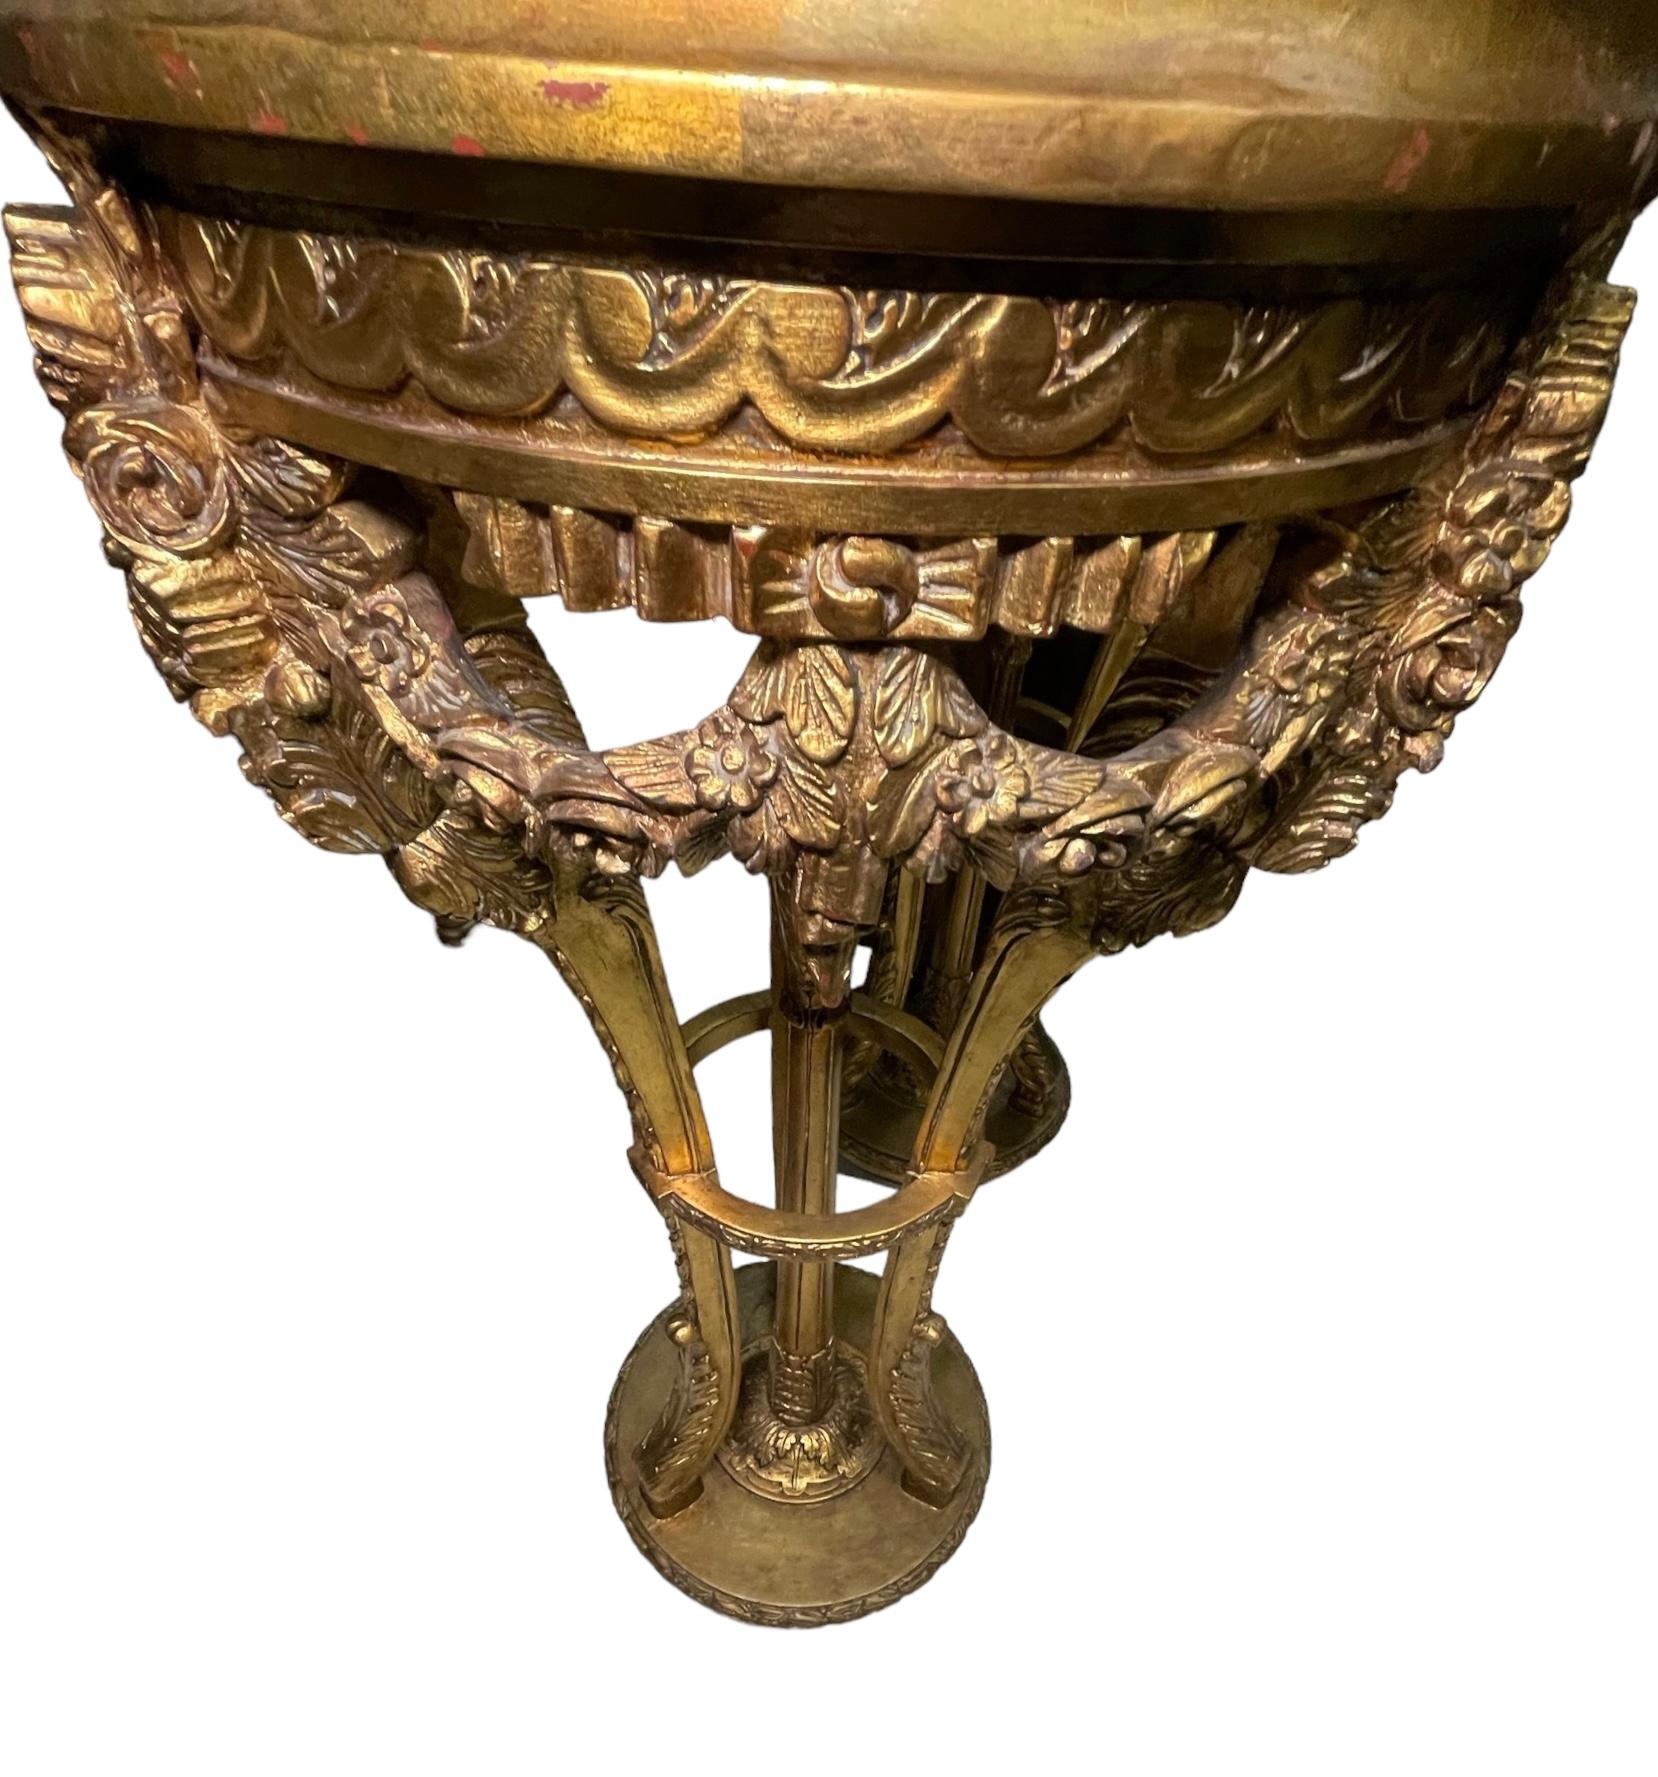 Il s'agit d'une paire de piédestaux en marbre et bois doré de style Louis XVI. Il représente un plateau rond en marbre beige encadré de bois doré sur un trépied composé de pieds en cabriole décorés de feuilles d'acanthe sculptées à la main dans la